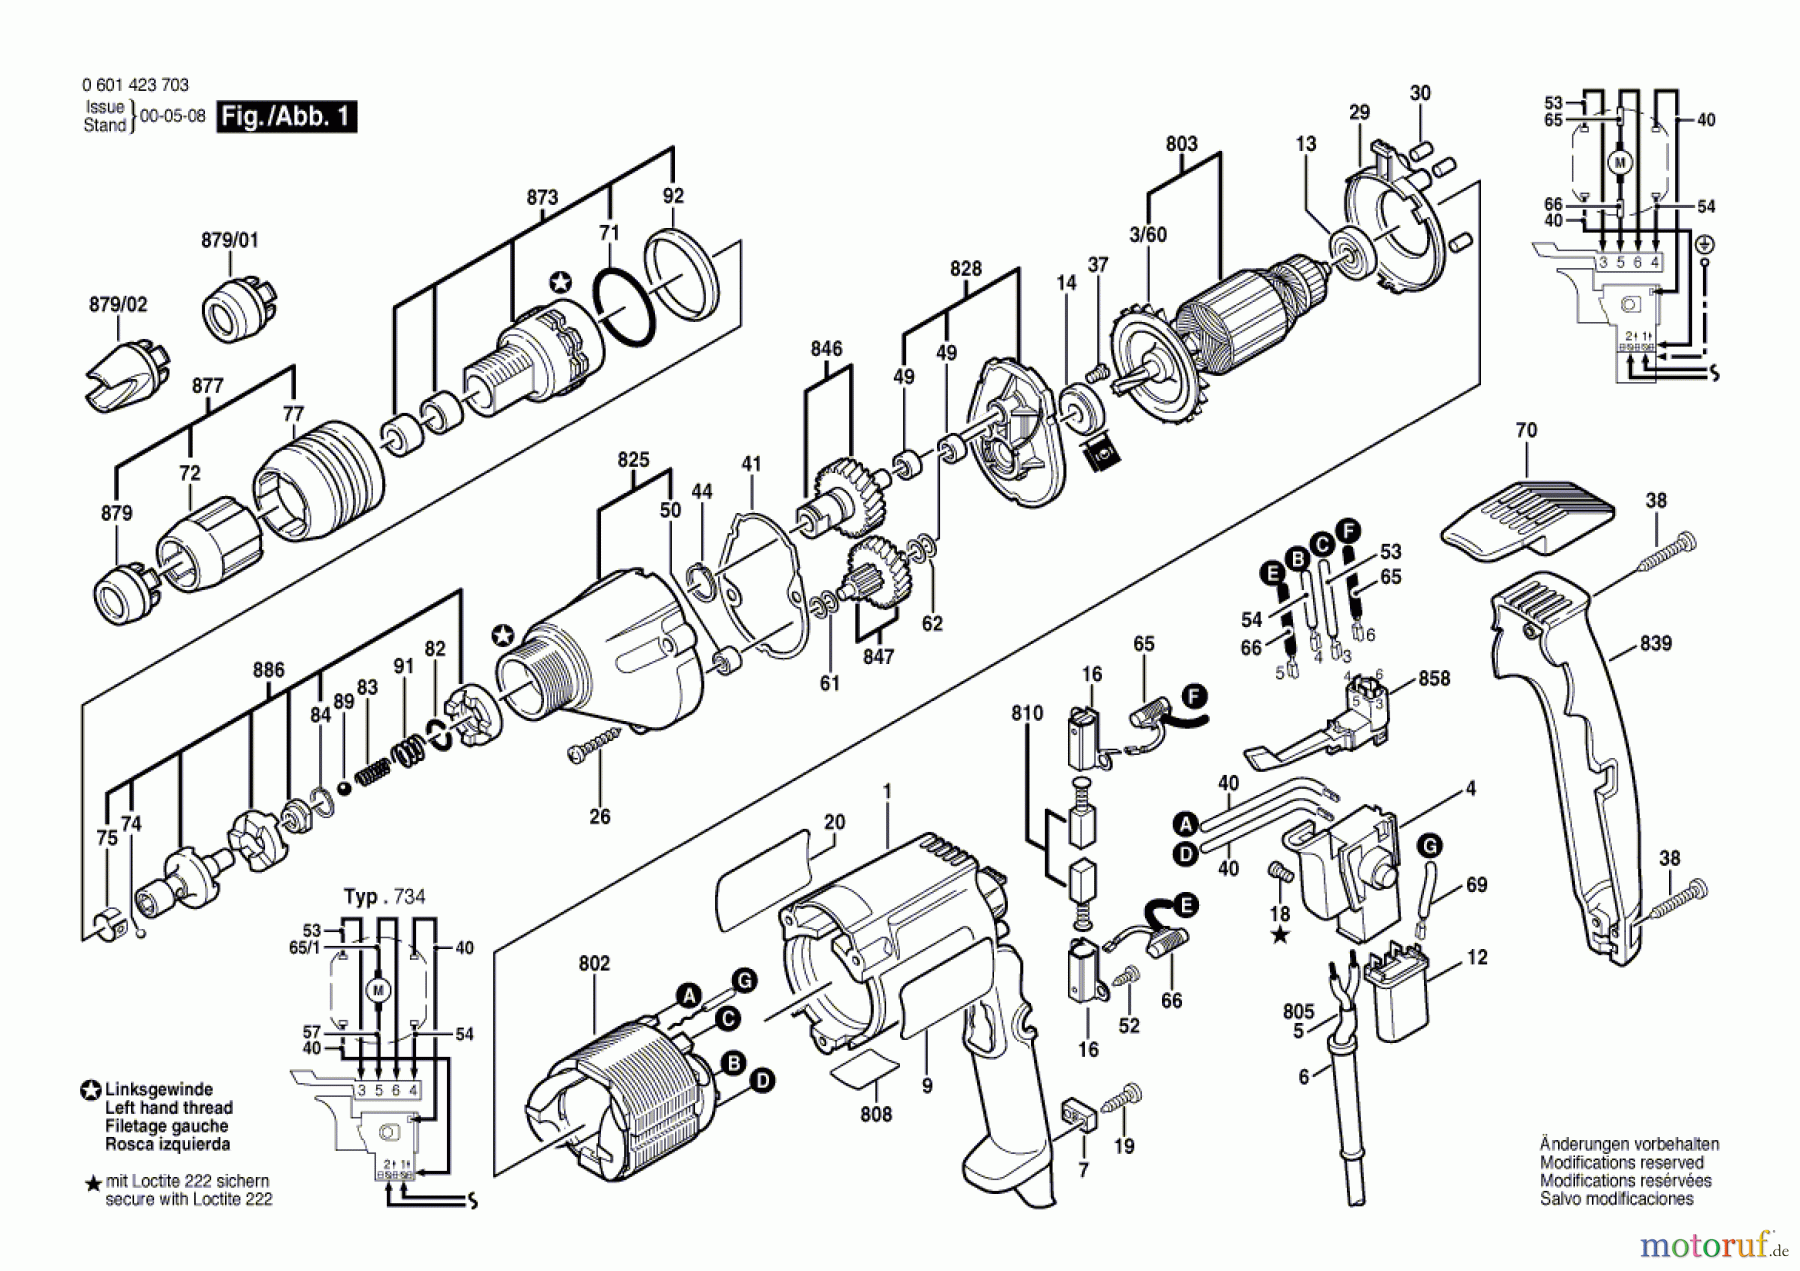  Bosch Werkzeug Bohrschrauber GSR 6-20 TE Seite 1